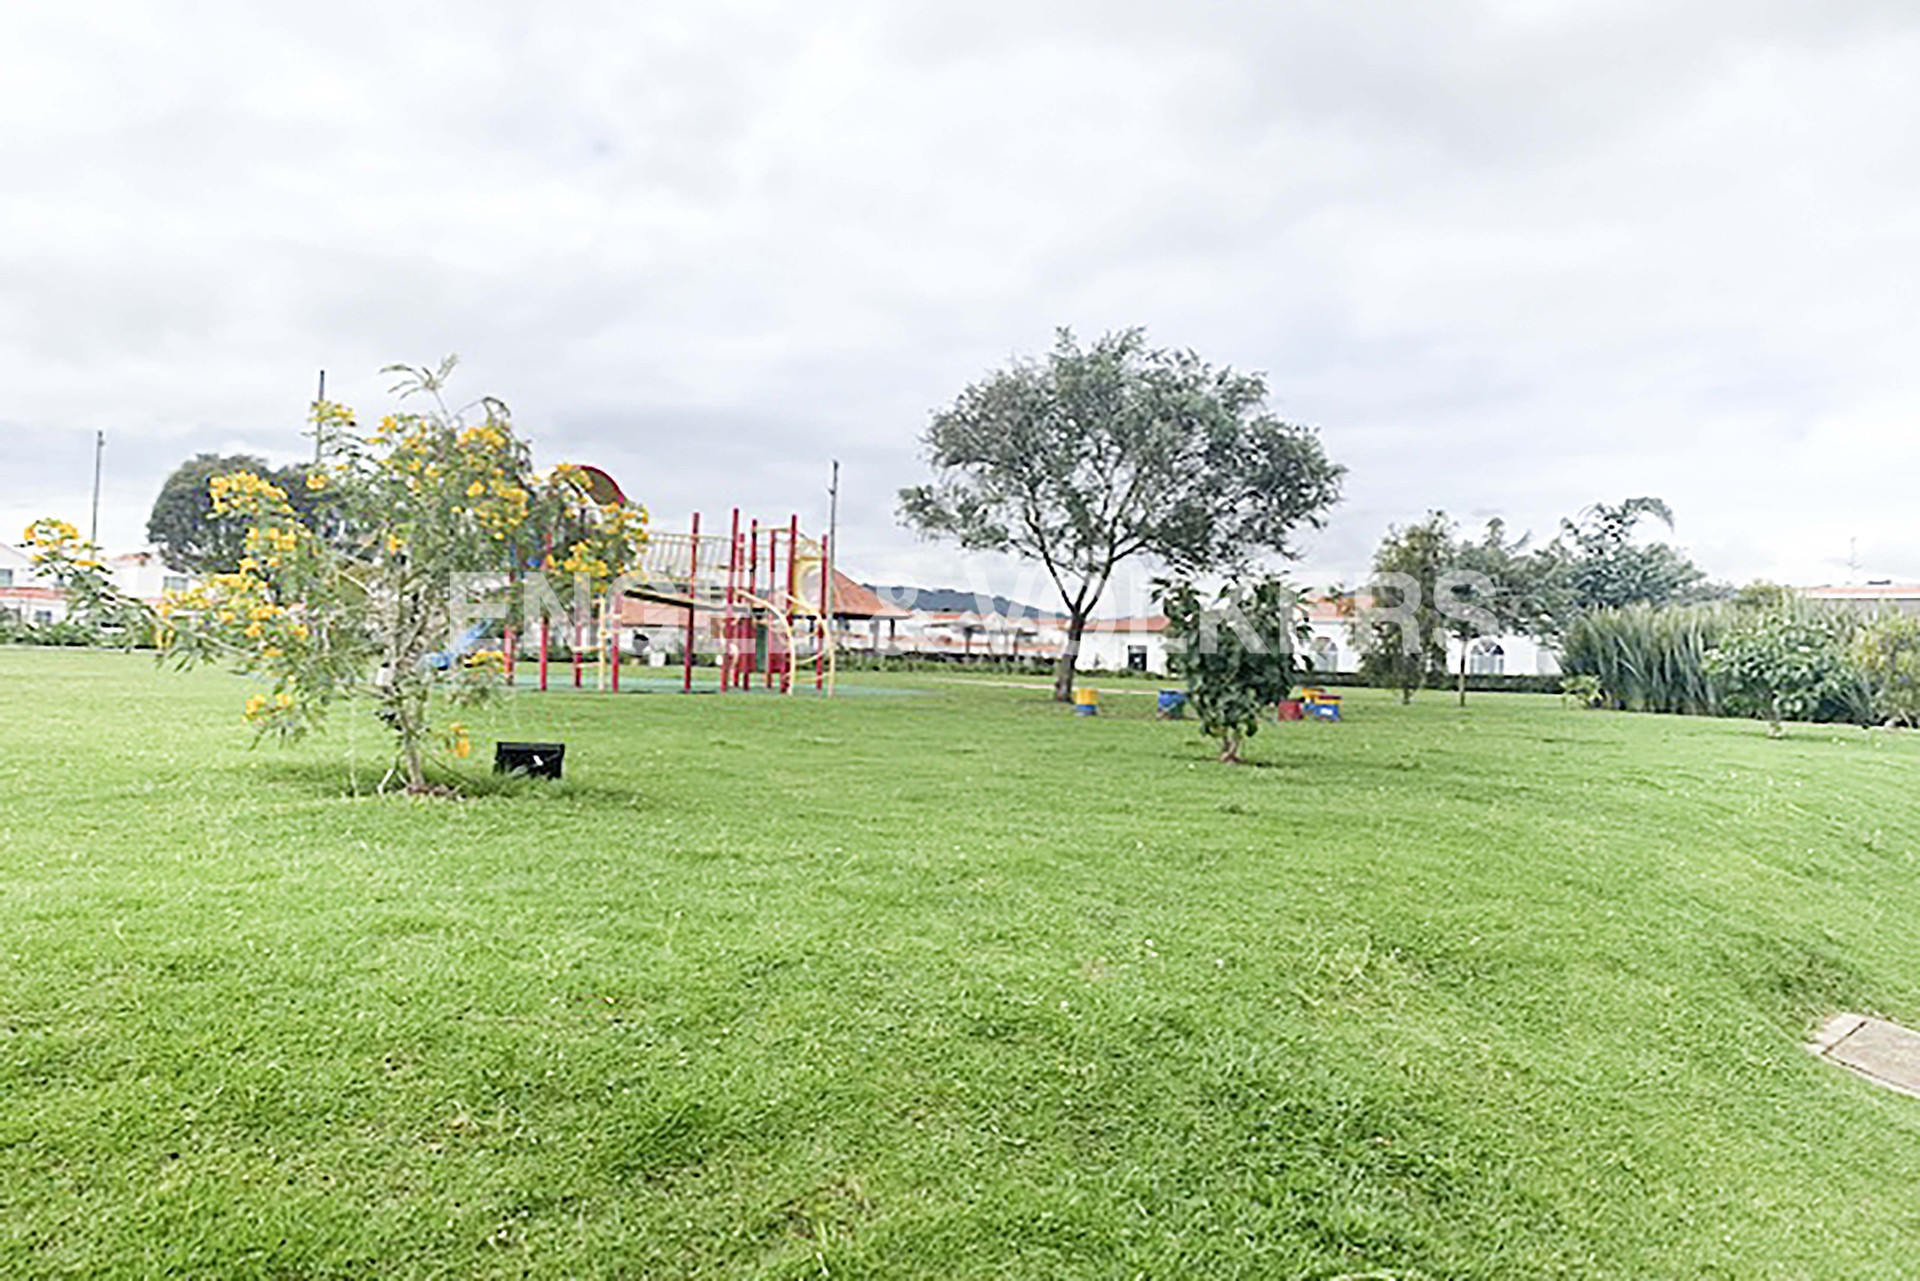 Casa en Cajicá - 13-Parque infantil